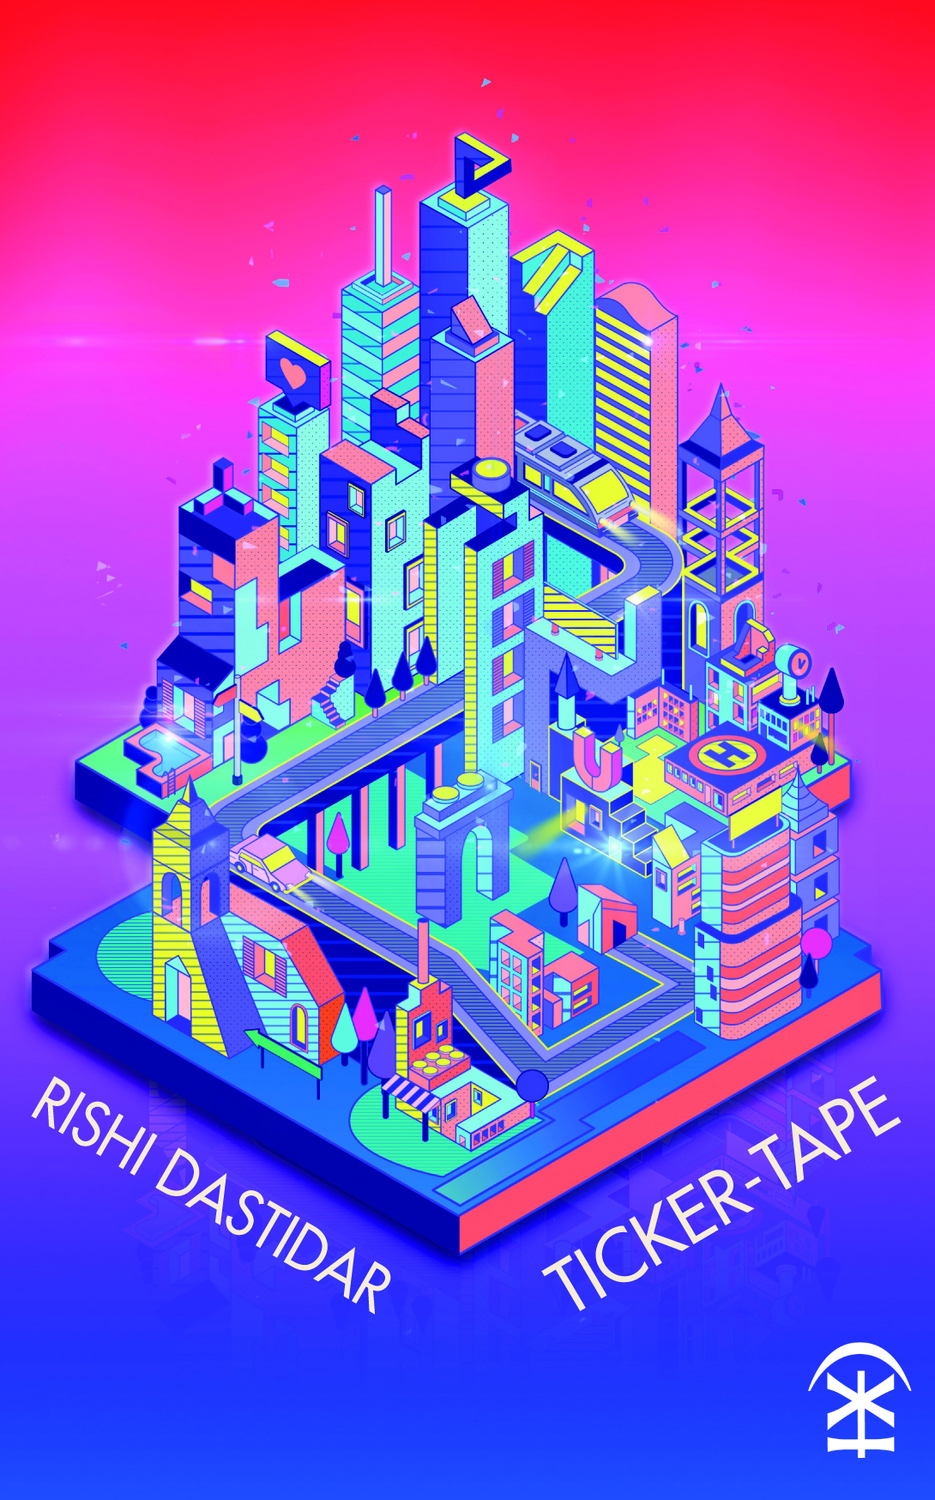 Ticker-tape - Rishi Dastidar